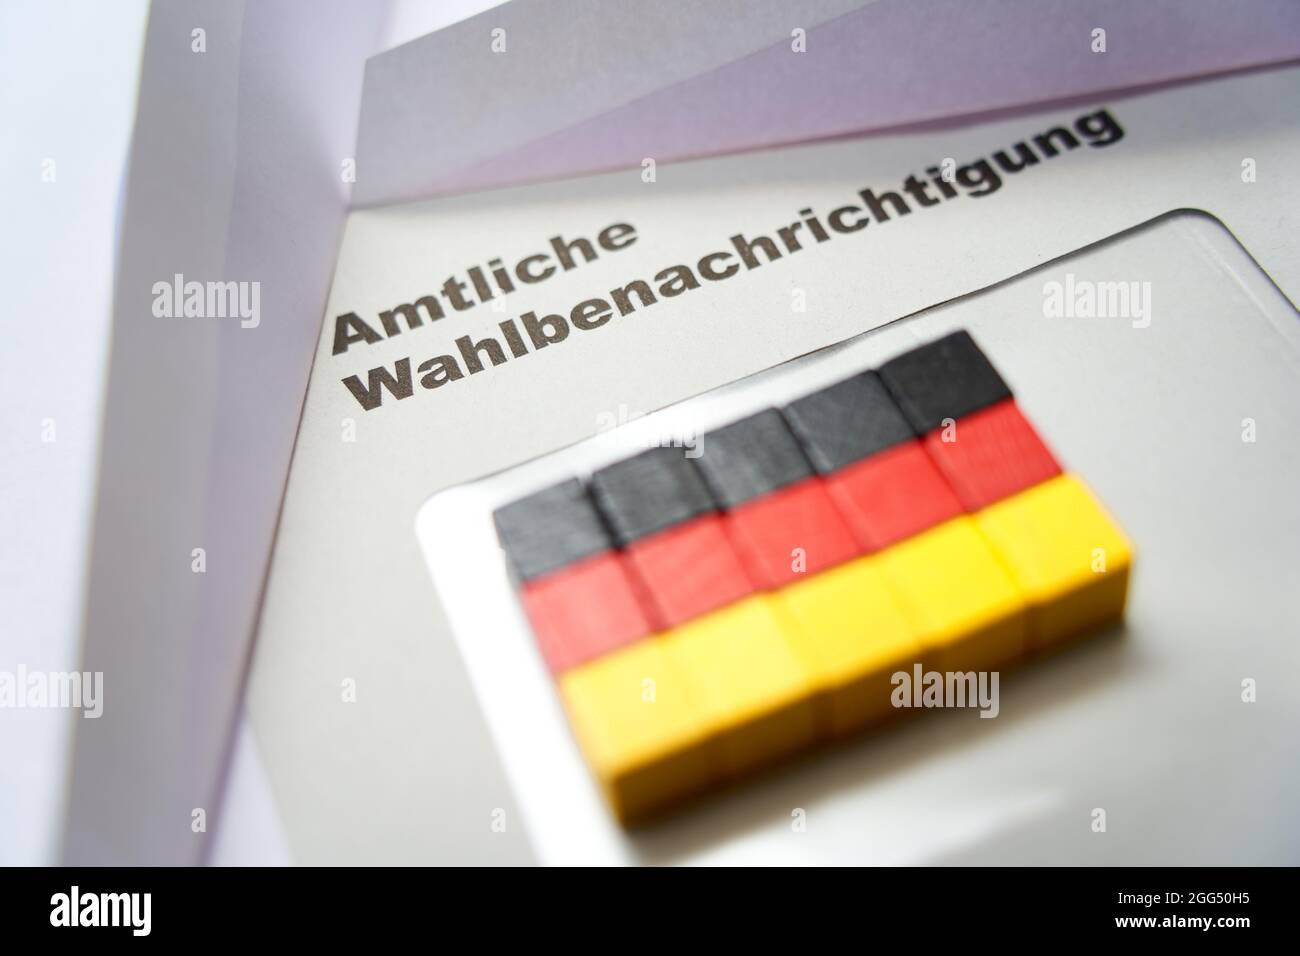 Lettere nere su busta bianca: Notifica ufficiale delle elezioni (in tedesco: Amtliche Wahlbenachrichtigung). Dadi in legno a forma di bandiera nazionale tedesca Foto Stock